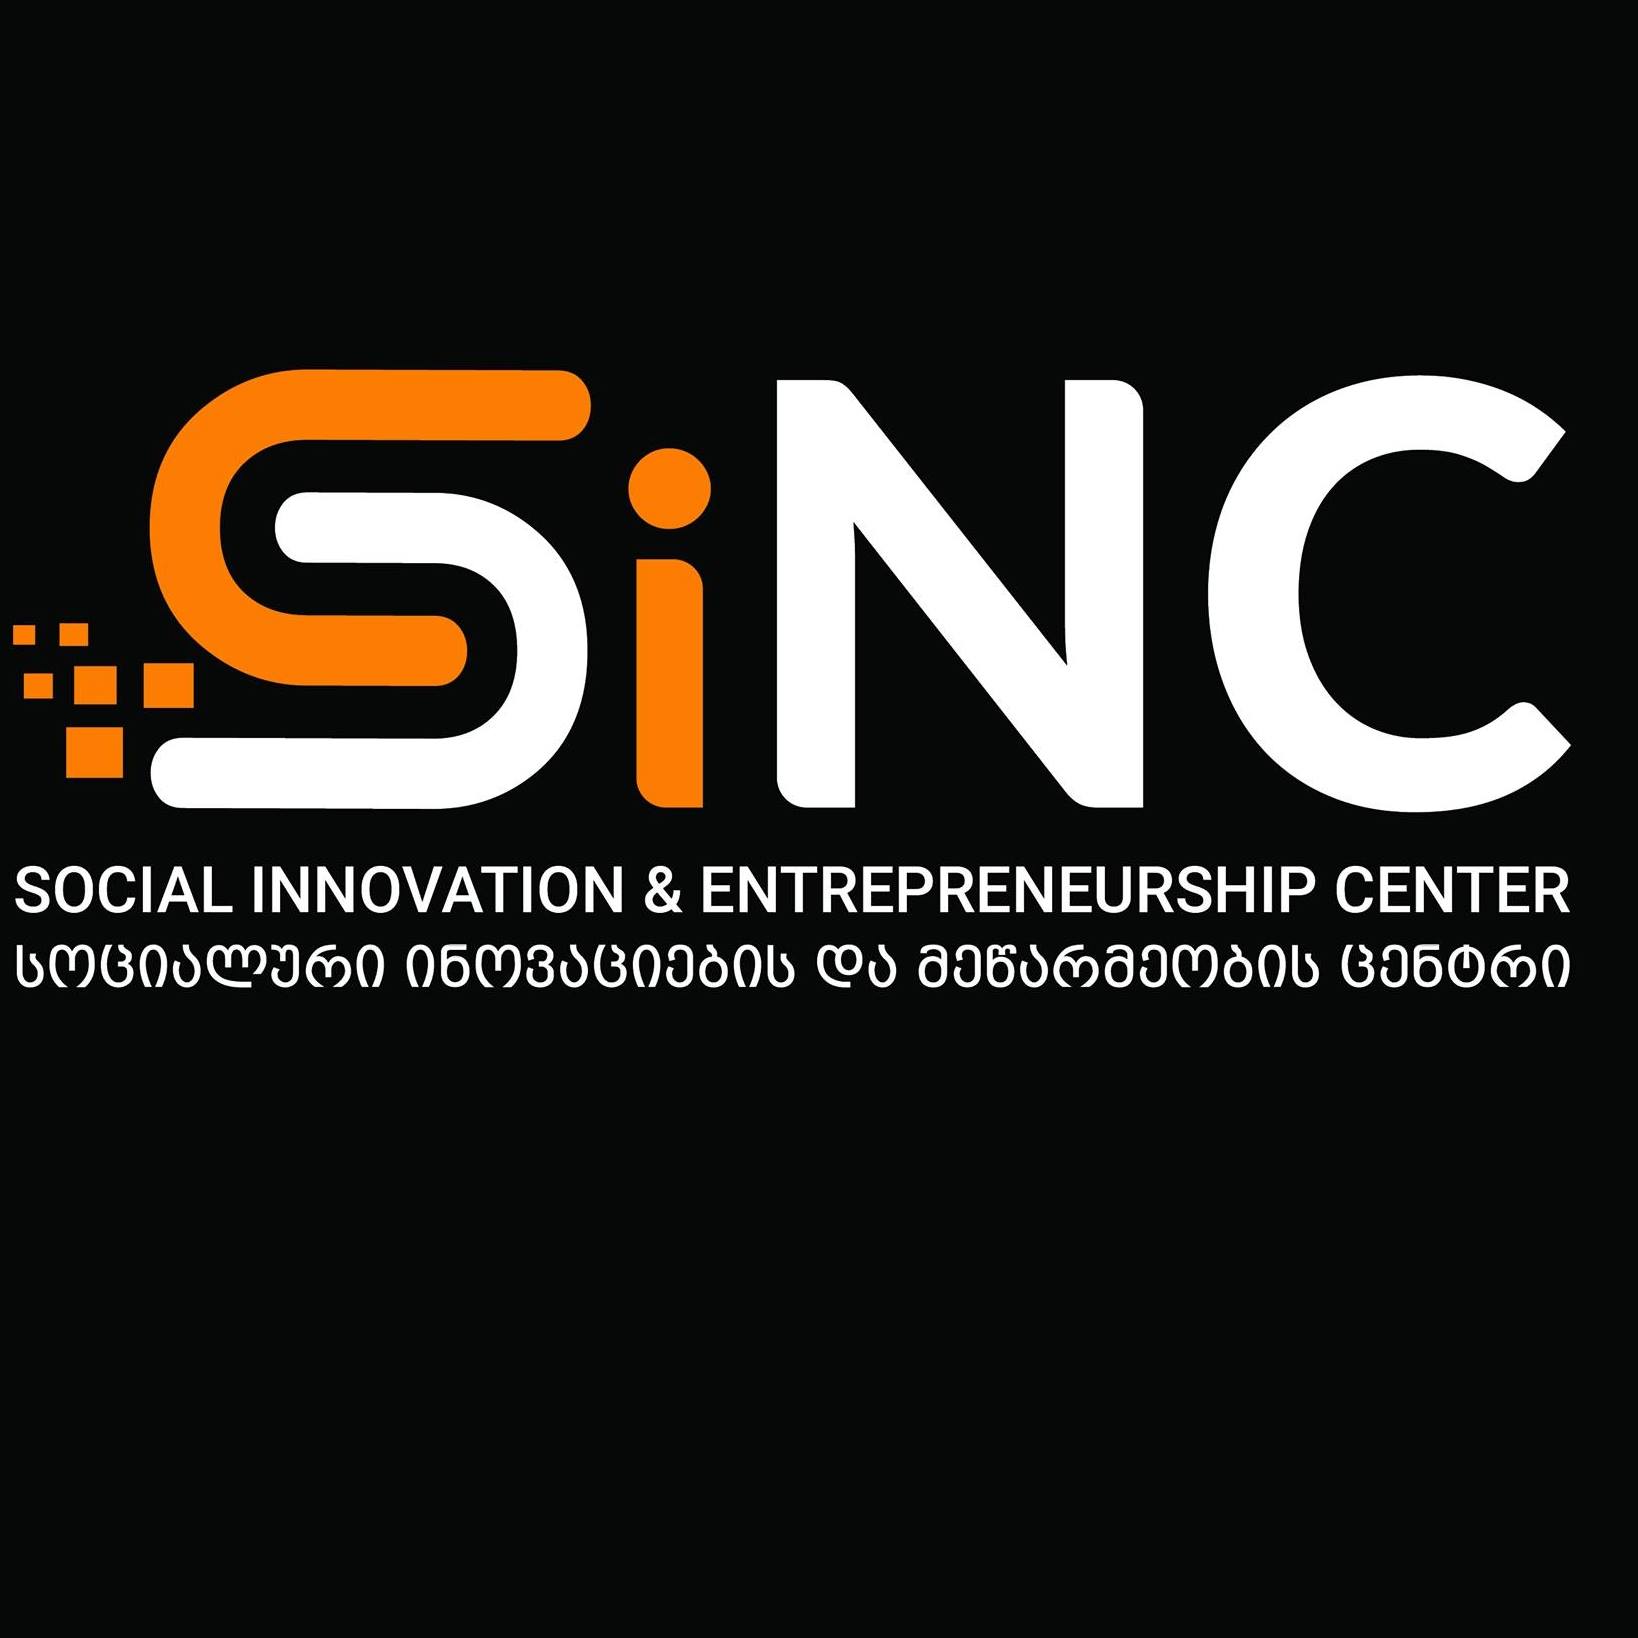 Social Innovation & Entrepreneurship Center